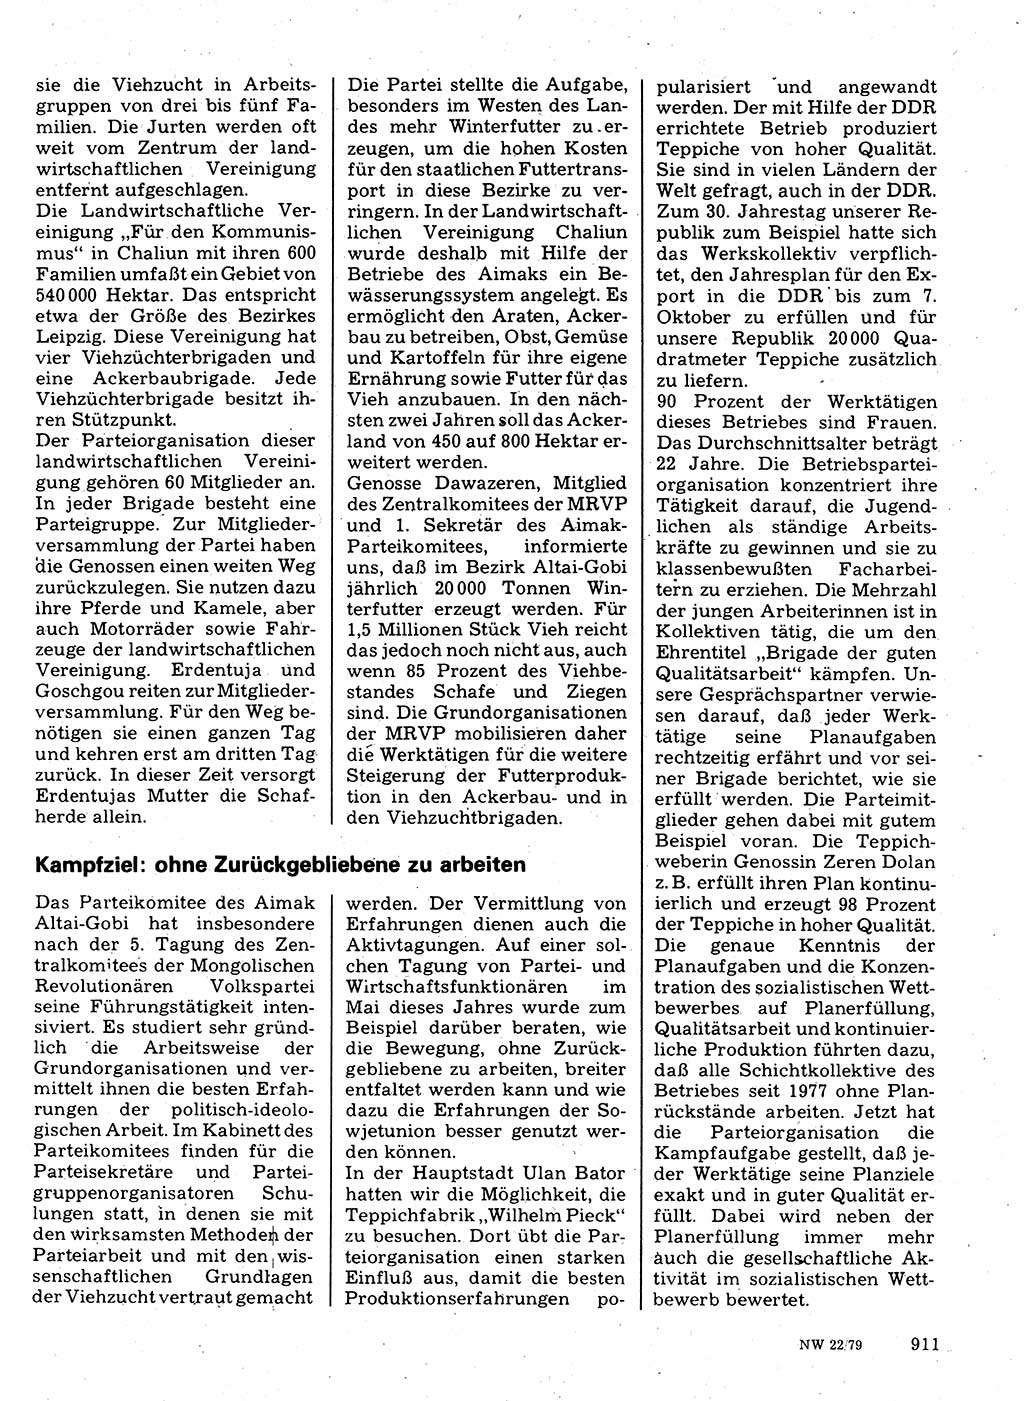 Neuer Weg (NW), Organ des Zentralkomitees (ZK) der SED (Sozialistische Einheitspartei Deutschlands) für Fragen des Parteilebens, 34. Jahrgang [Deutsche Demokratische Republik (DDR)] 1979, Seite 911 (NW ZK SED DDR 1979, S. 911)